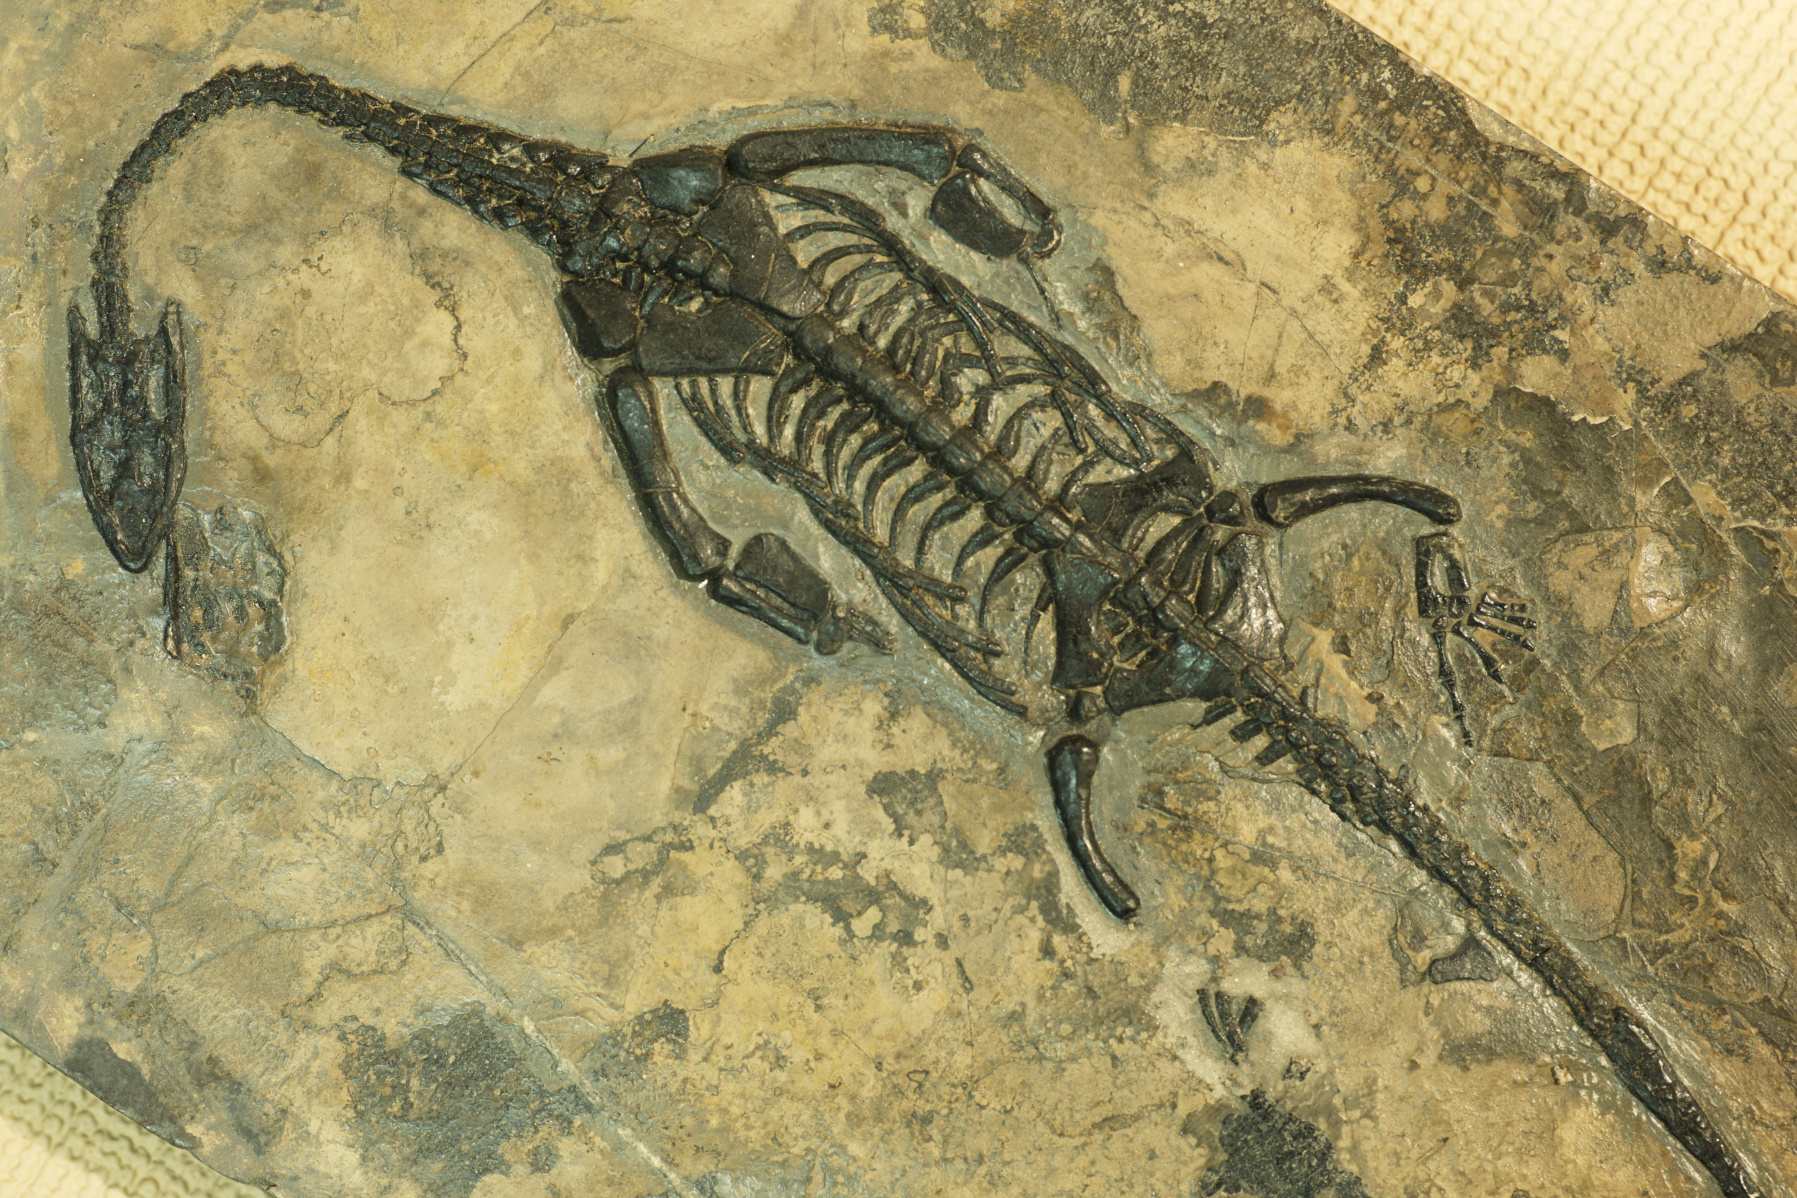 fossile de thalattosaure